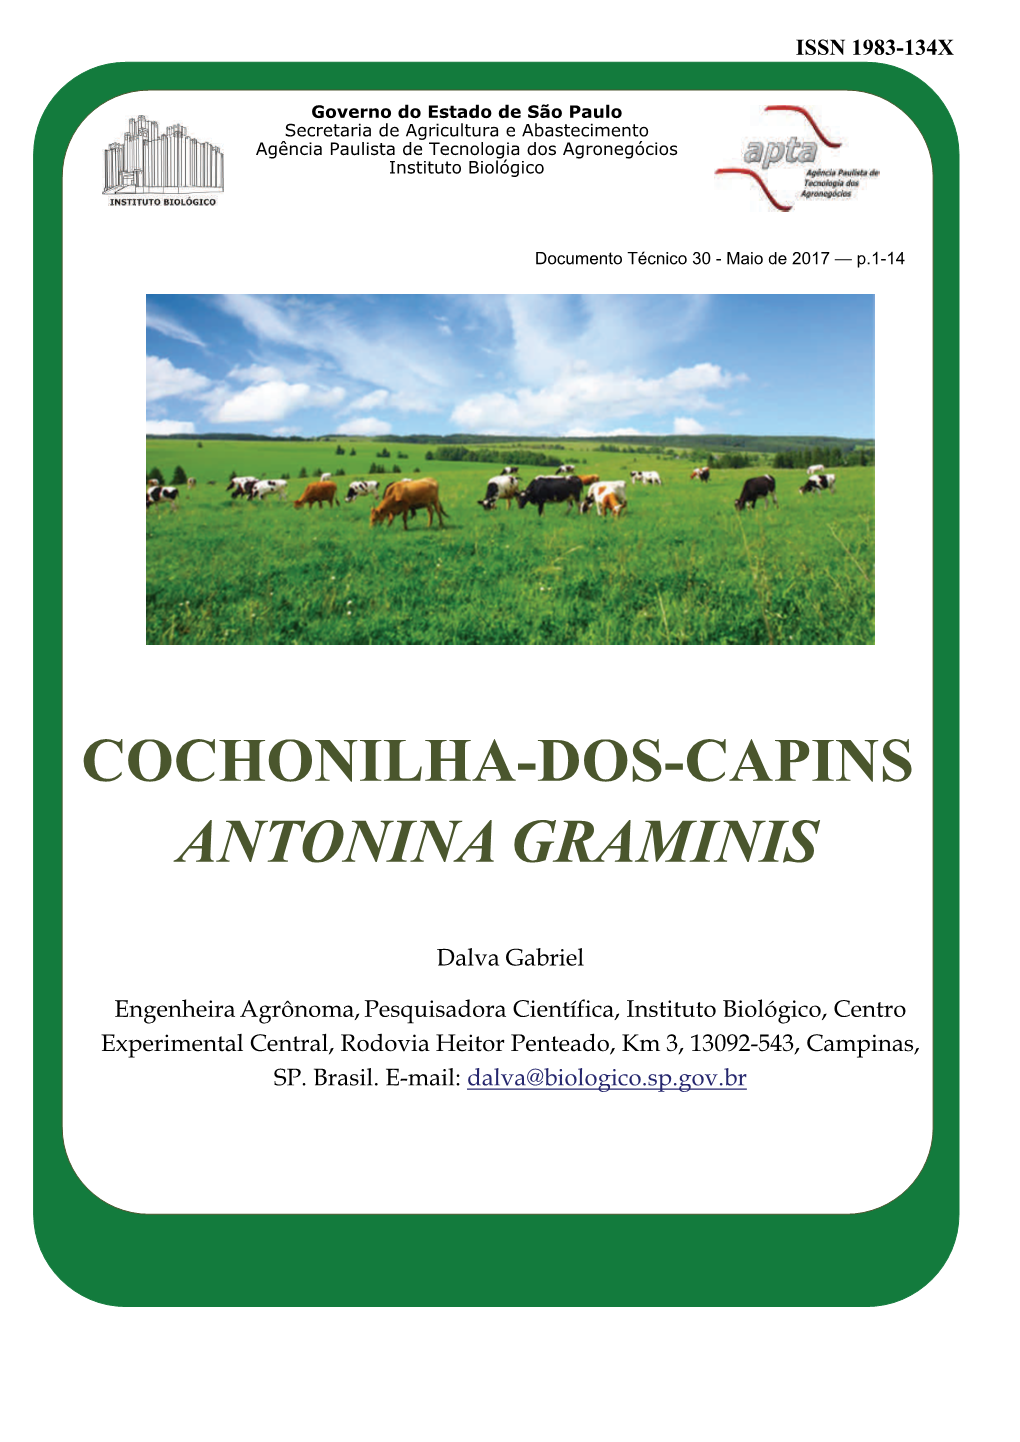 Cochonilha-Dos-Capins Antonina Graminis